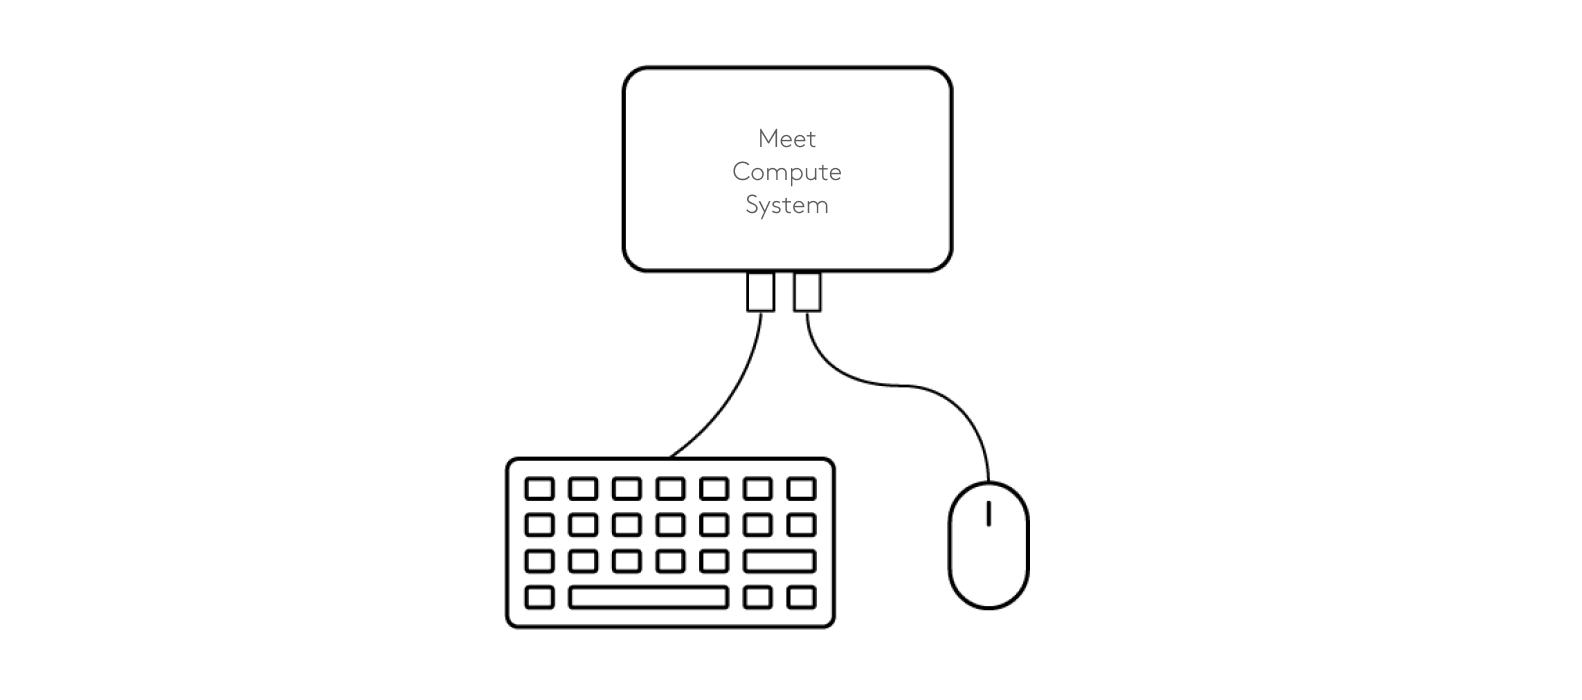 キーボードとマウス + Meetコンピューティングシステムの接続図